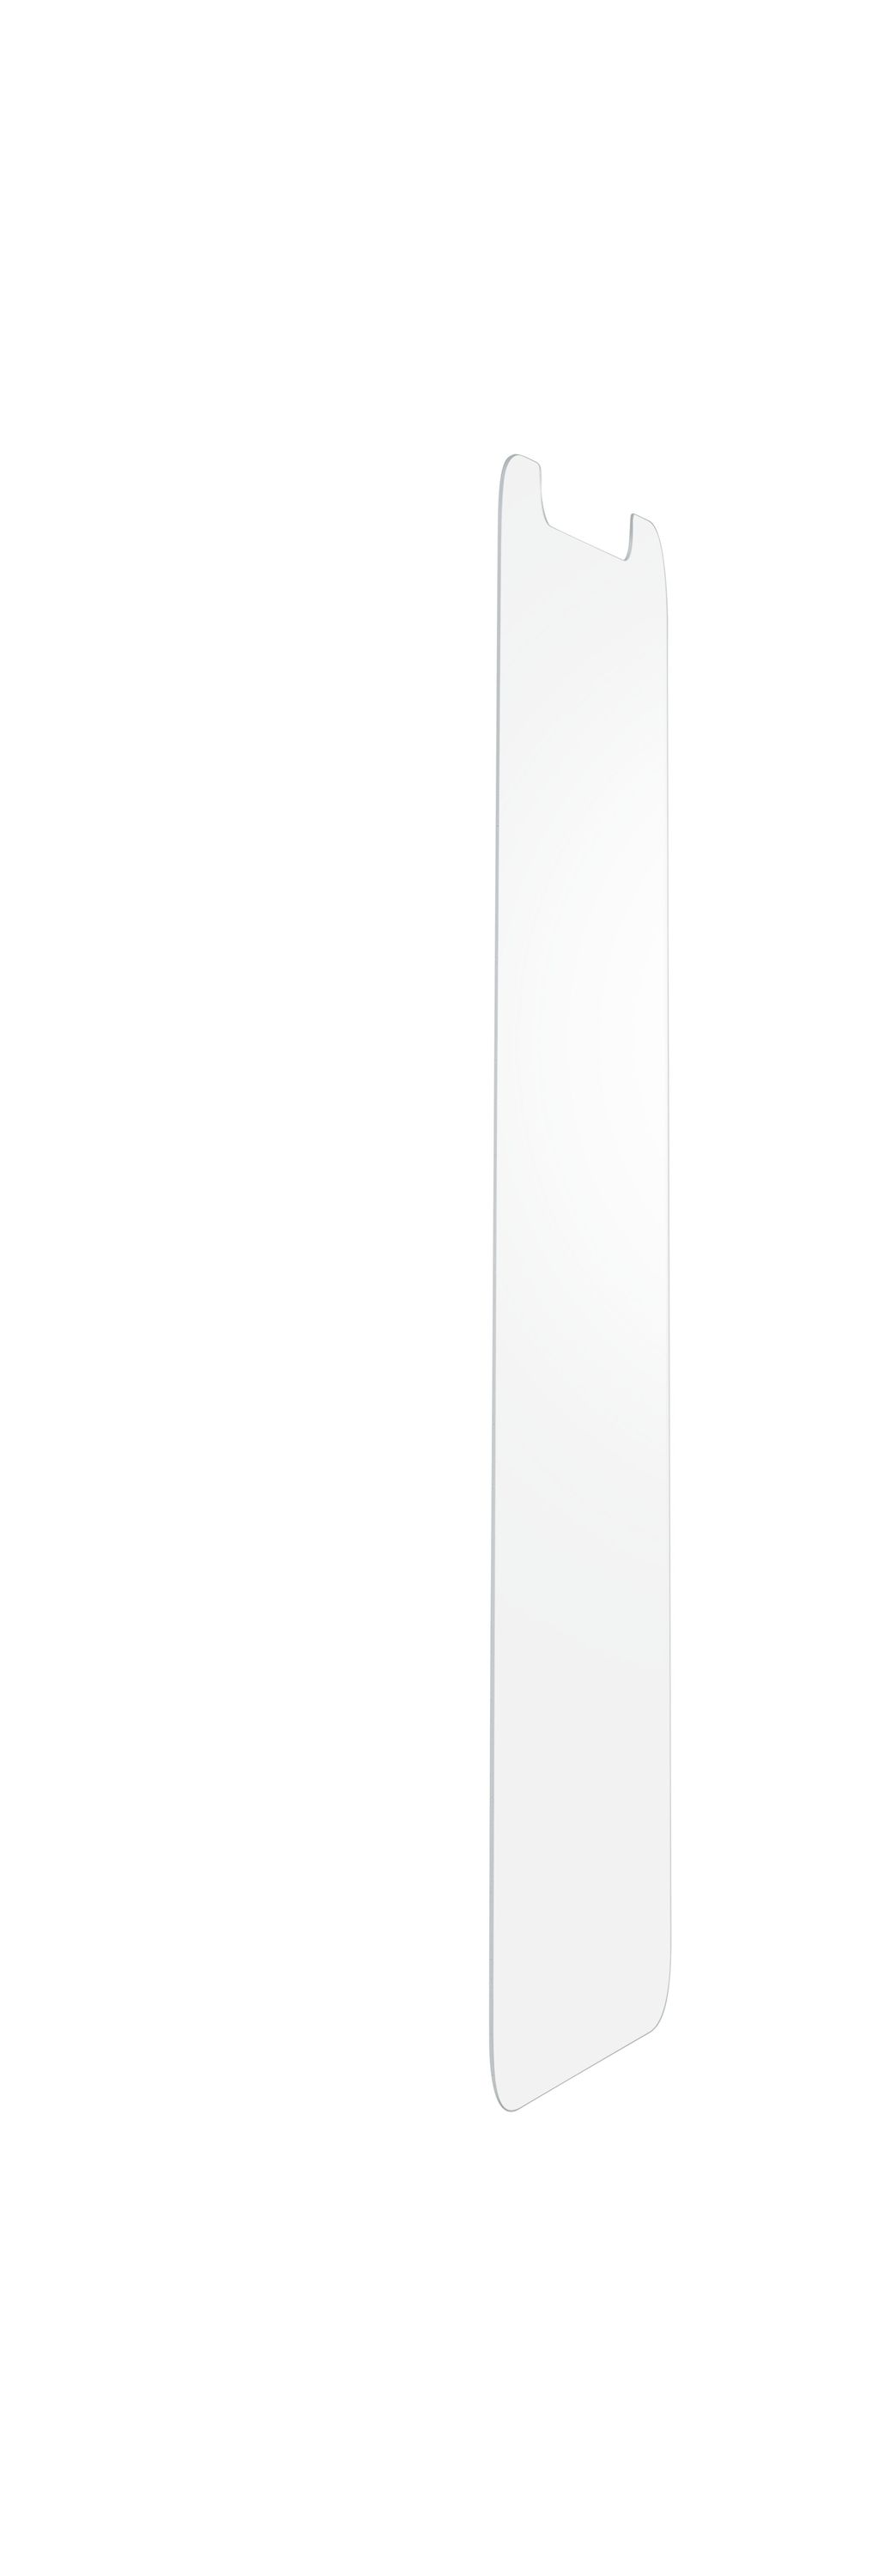 iPhone 13 Pro Max, prot. d'cran verre tremp, transparent